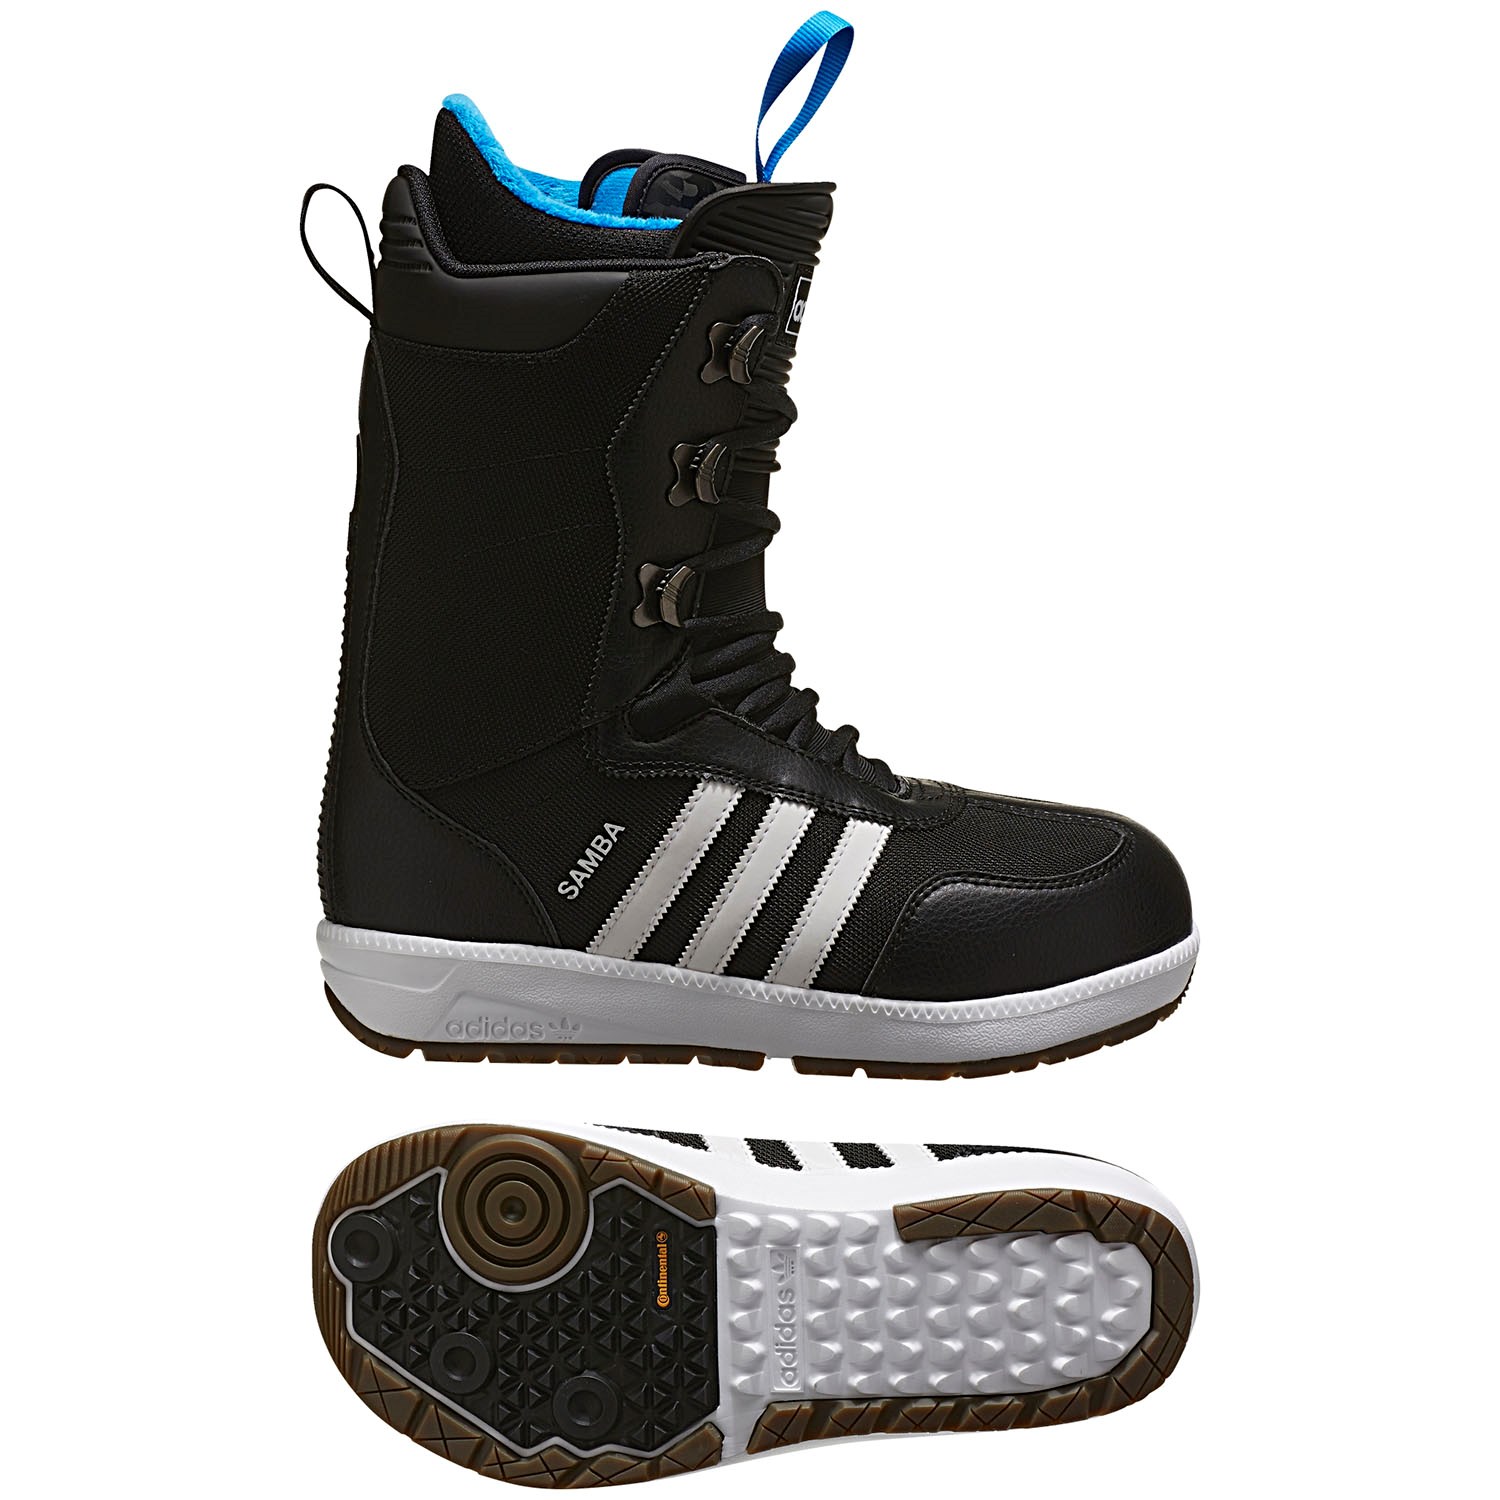 Adidas Samba Snowboard Boots 2017 | evo